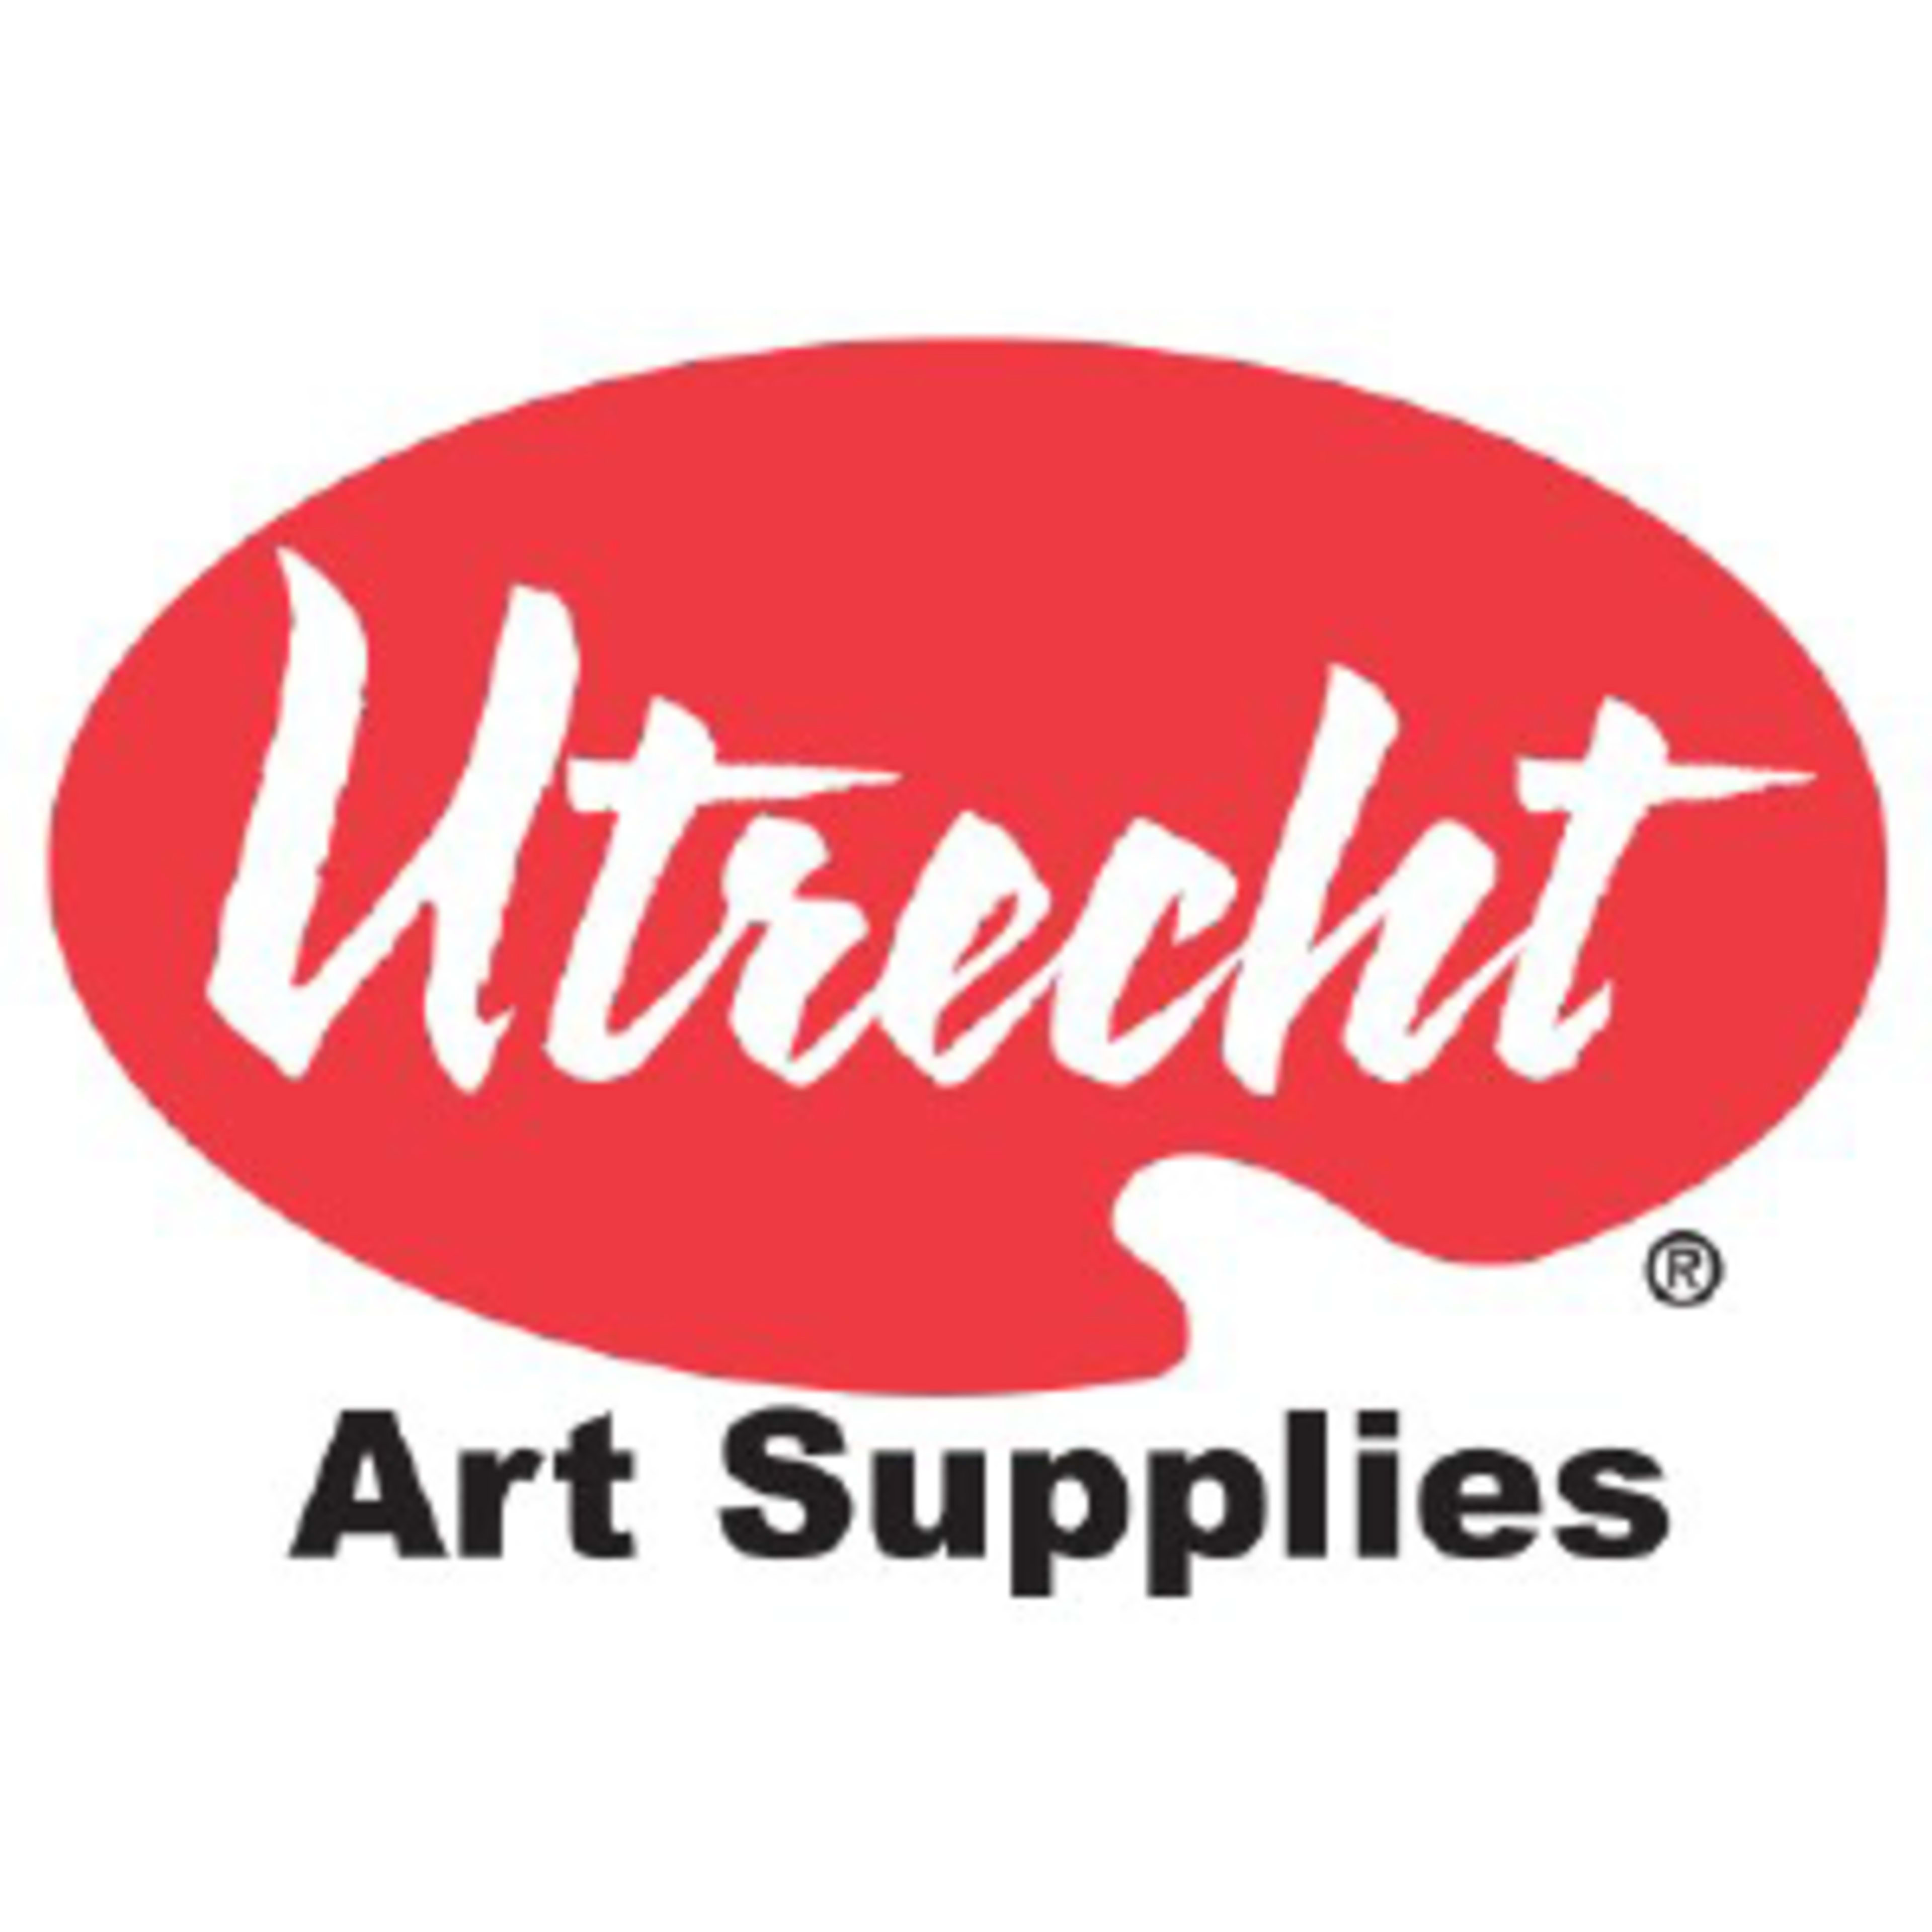 Utrecht Art SuppliesCode